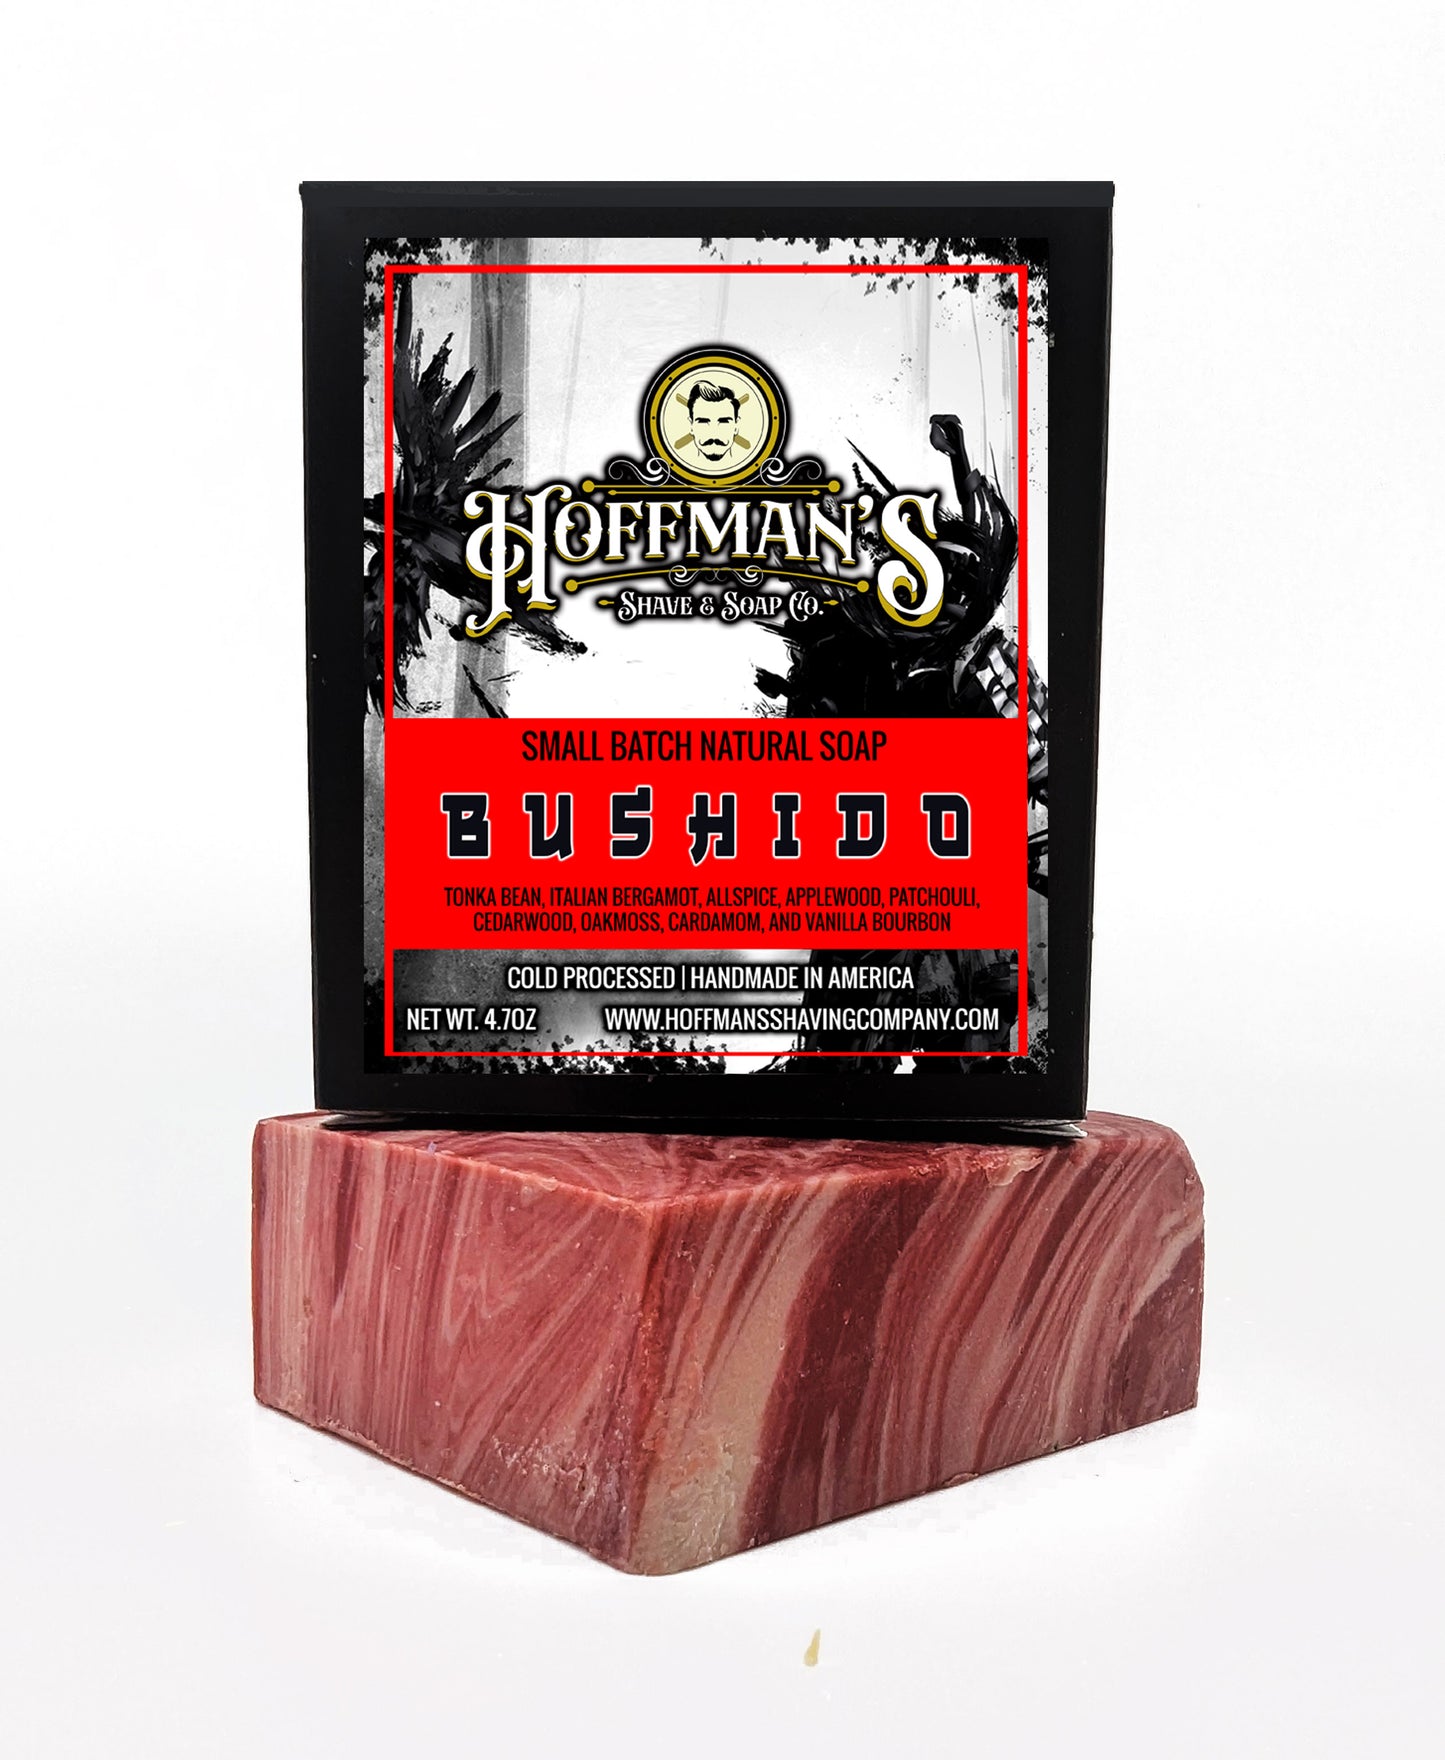 Bushido Full (Applewood, Allspice, Vanilla Bourbon, Italian Bergamot) Bar Soap